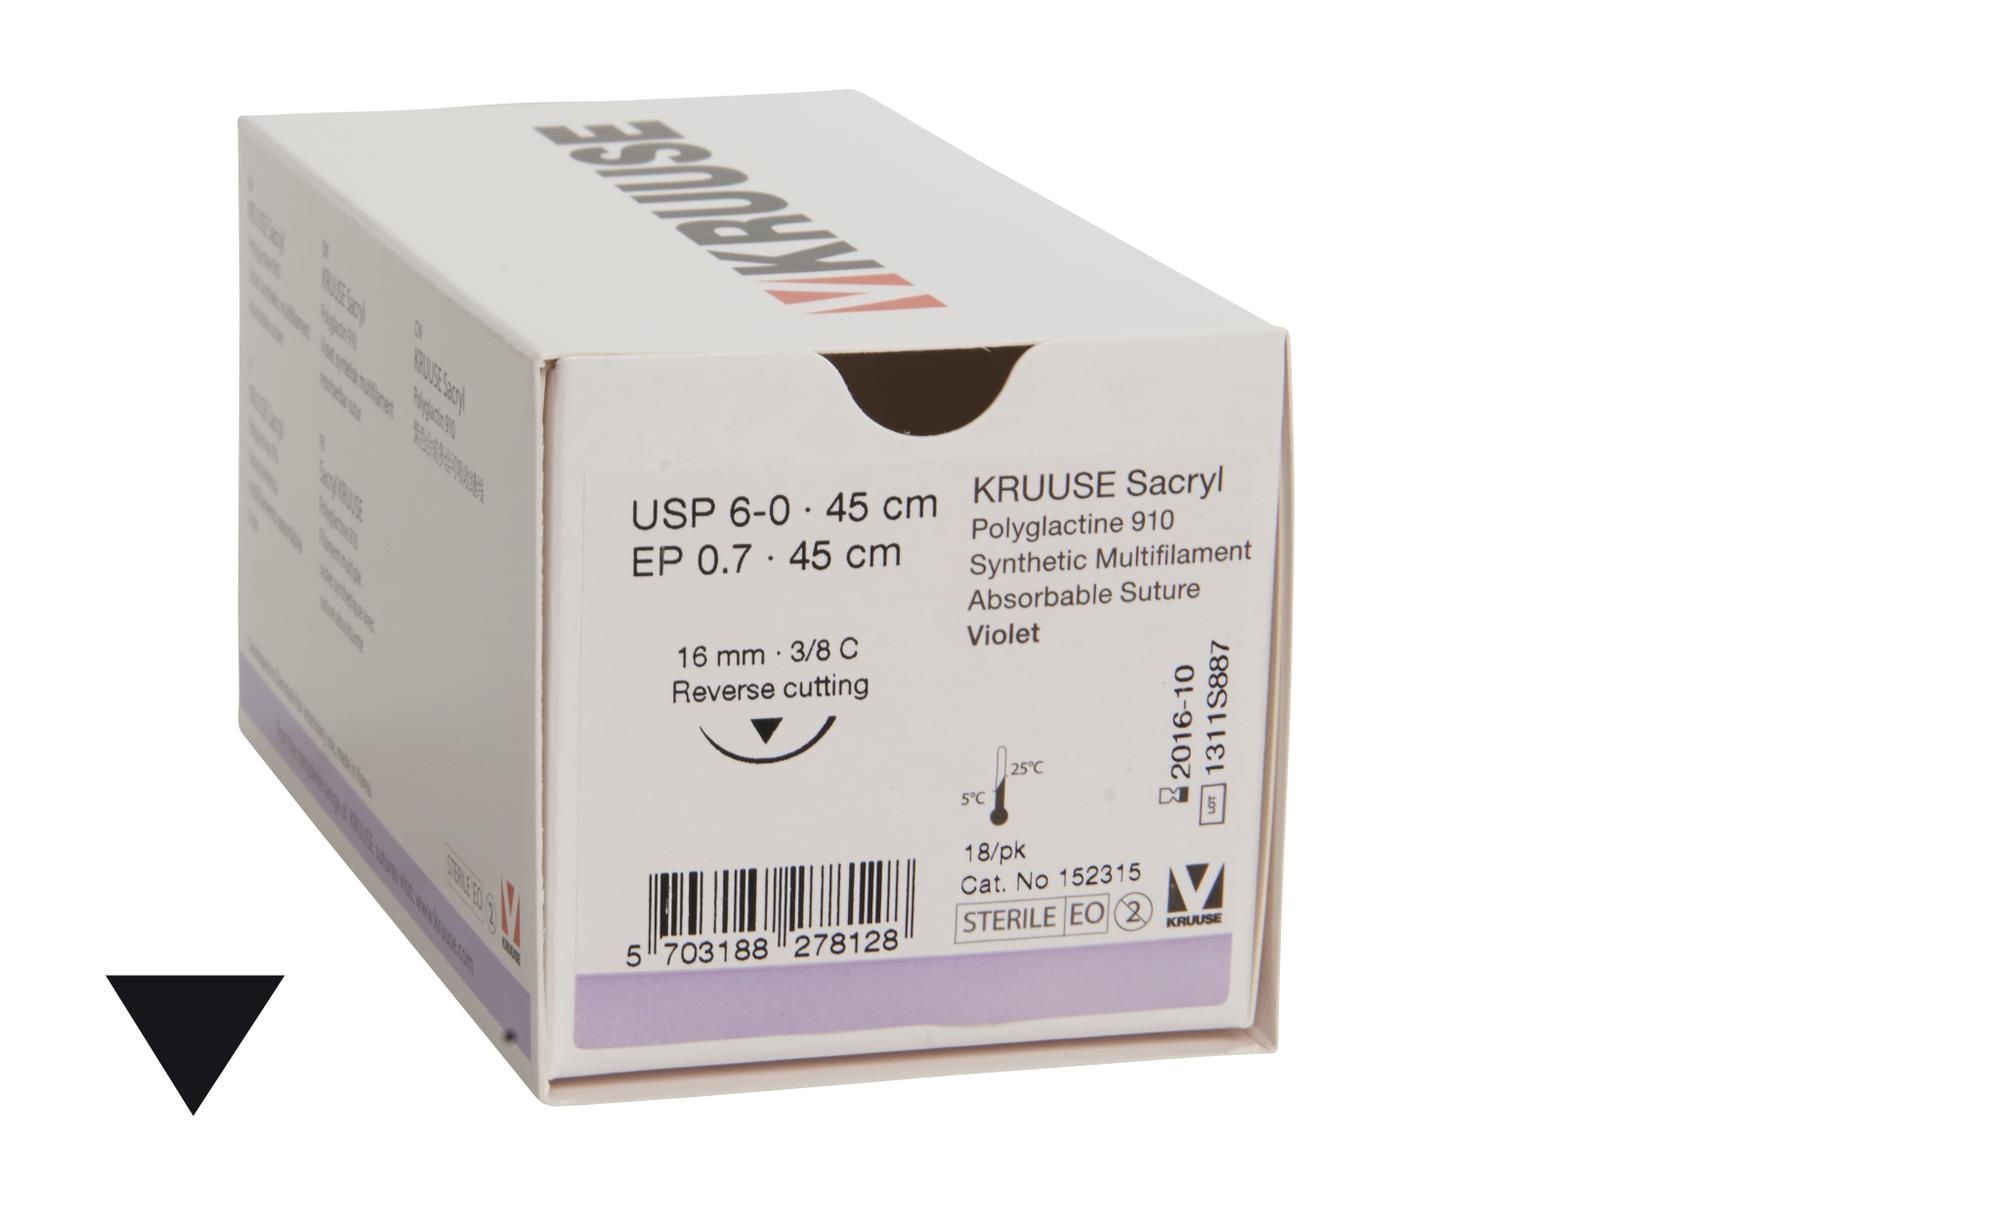 KRUUSE Sacryl Suture, 6-0, 45 cm, 16 mm, 3/8C, RC, 18/pk